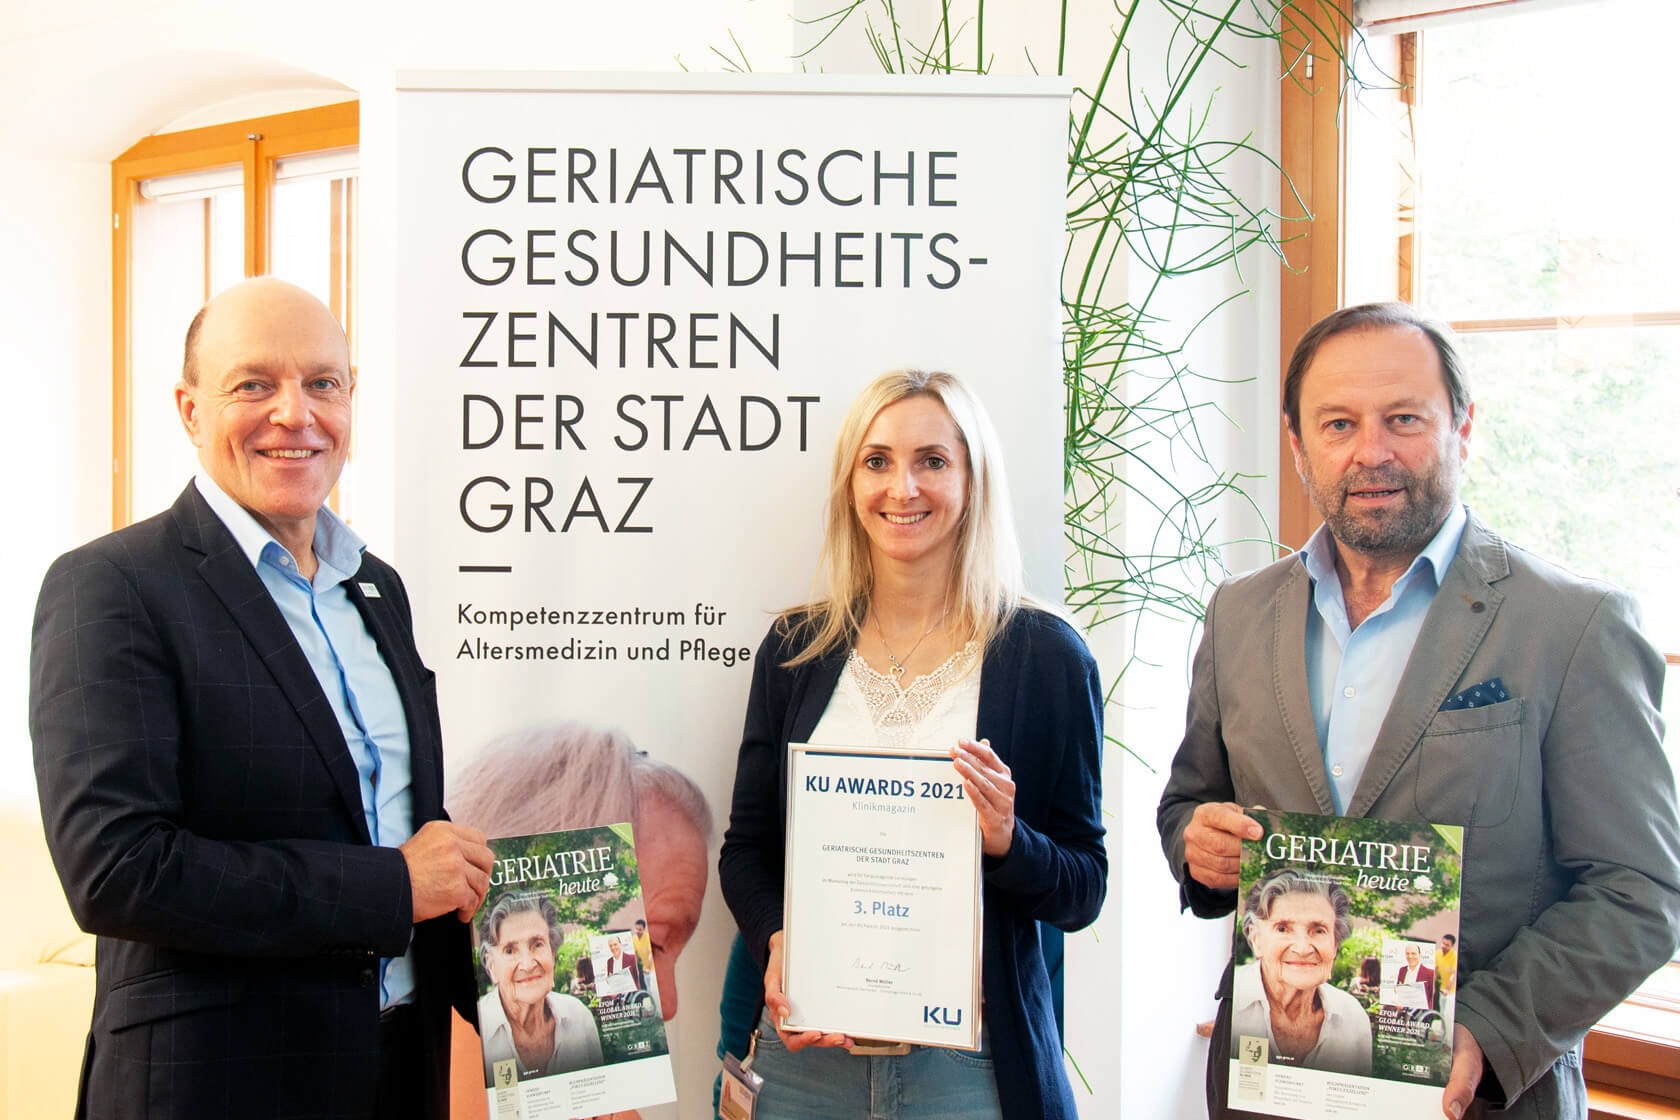 GGZ Geschäftsführer Gerd Hartinger mit Daniela Langmann und Franz Scheucher mit der KU Awards Urkunde für die Zeitschrift Geriatrie heute aus dem Jahr 2021